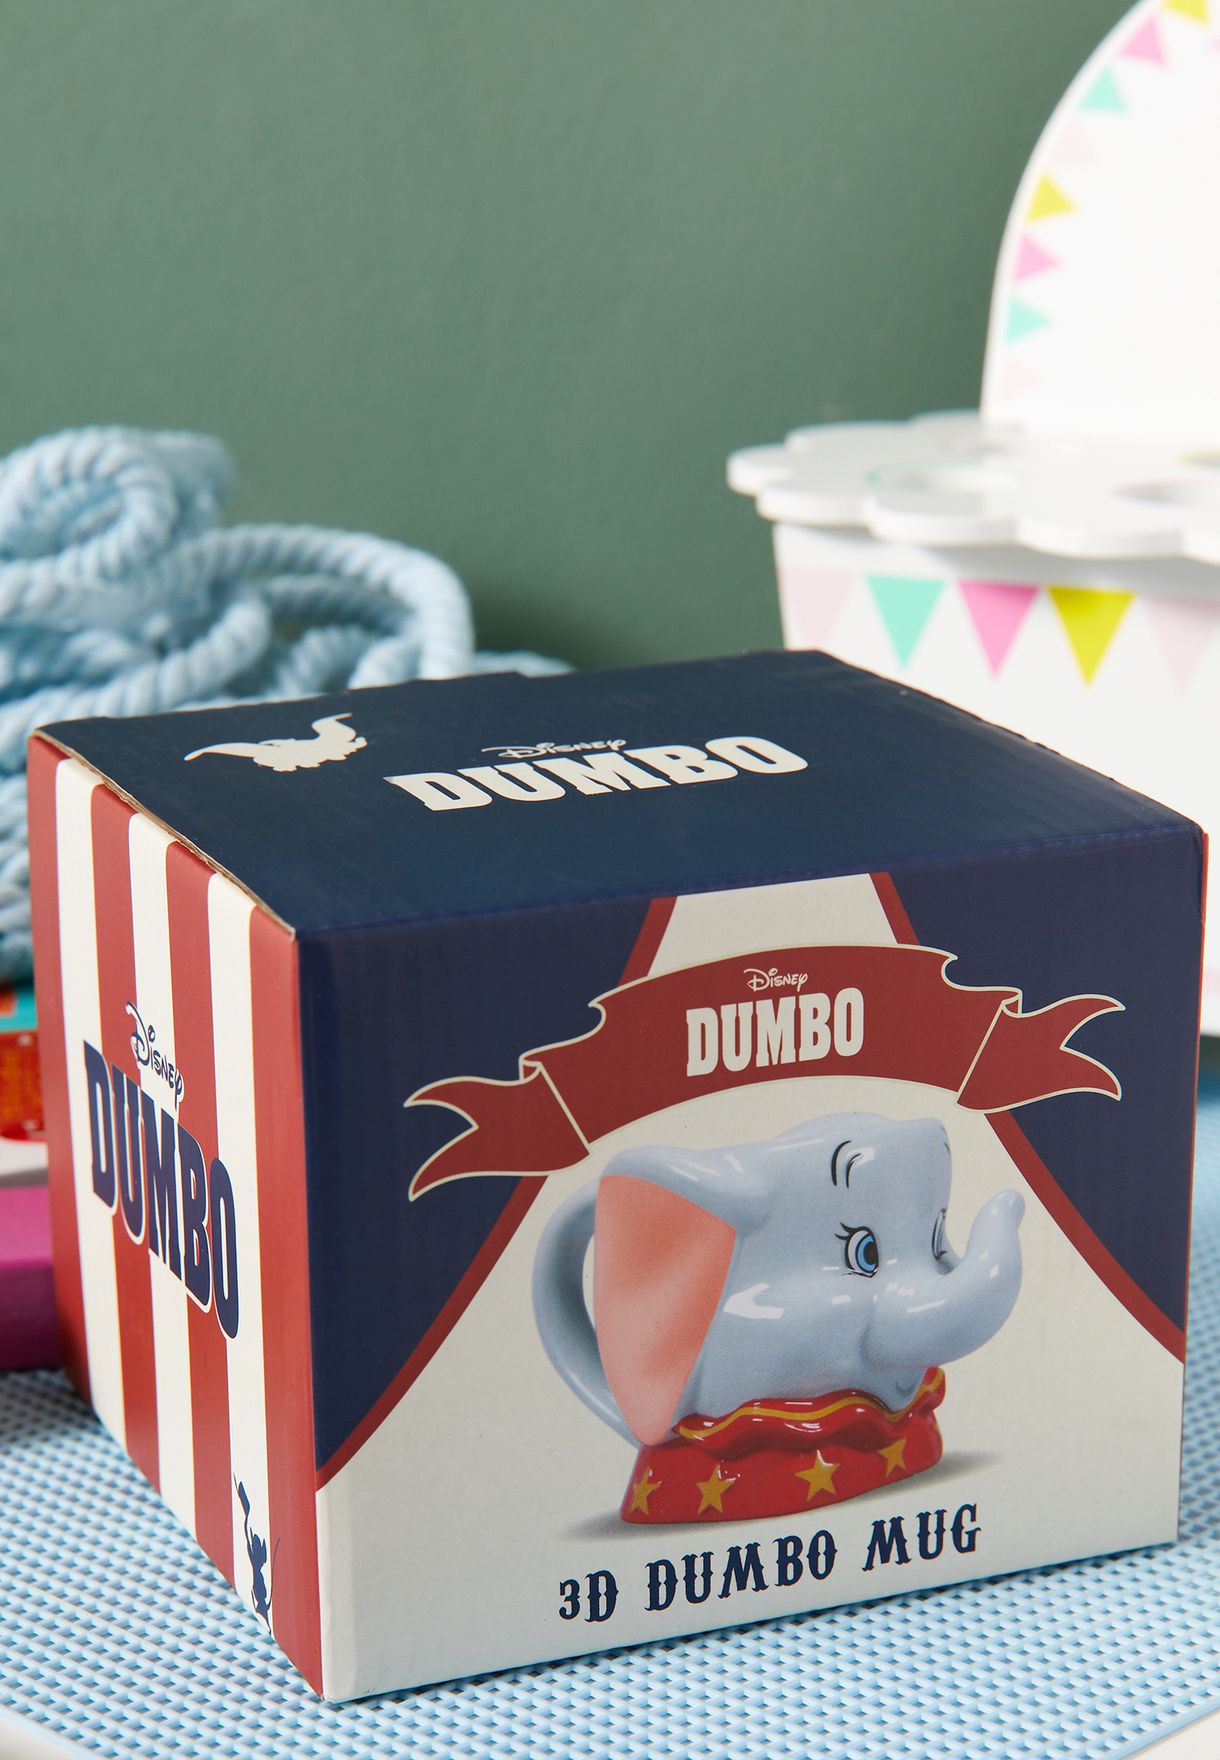 Disney Dumbo Shaped Mug